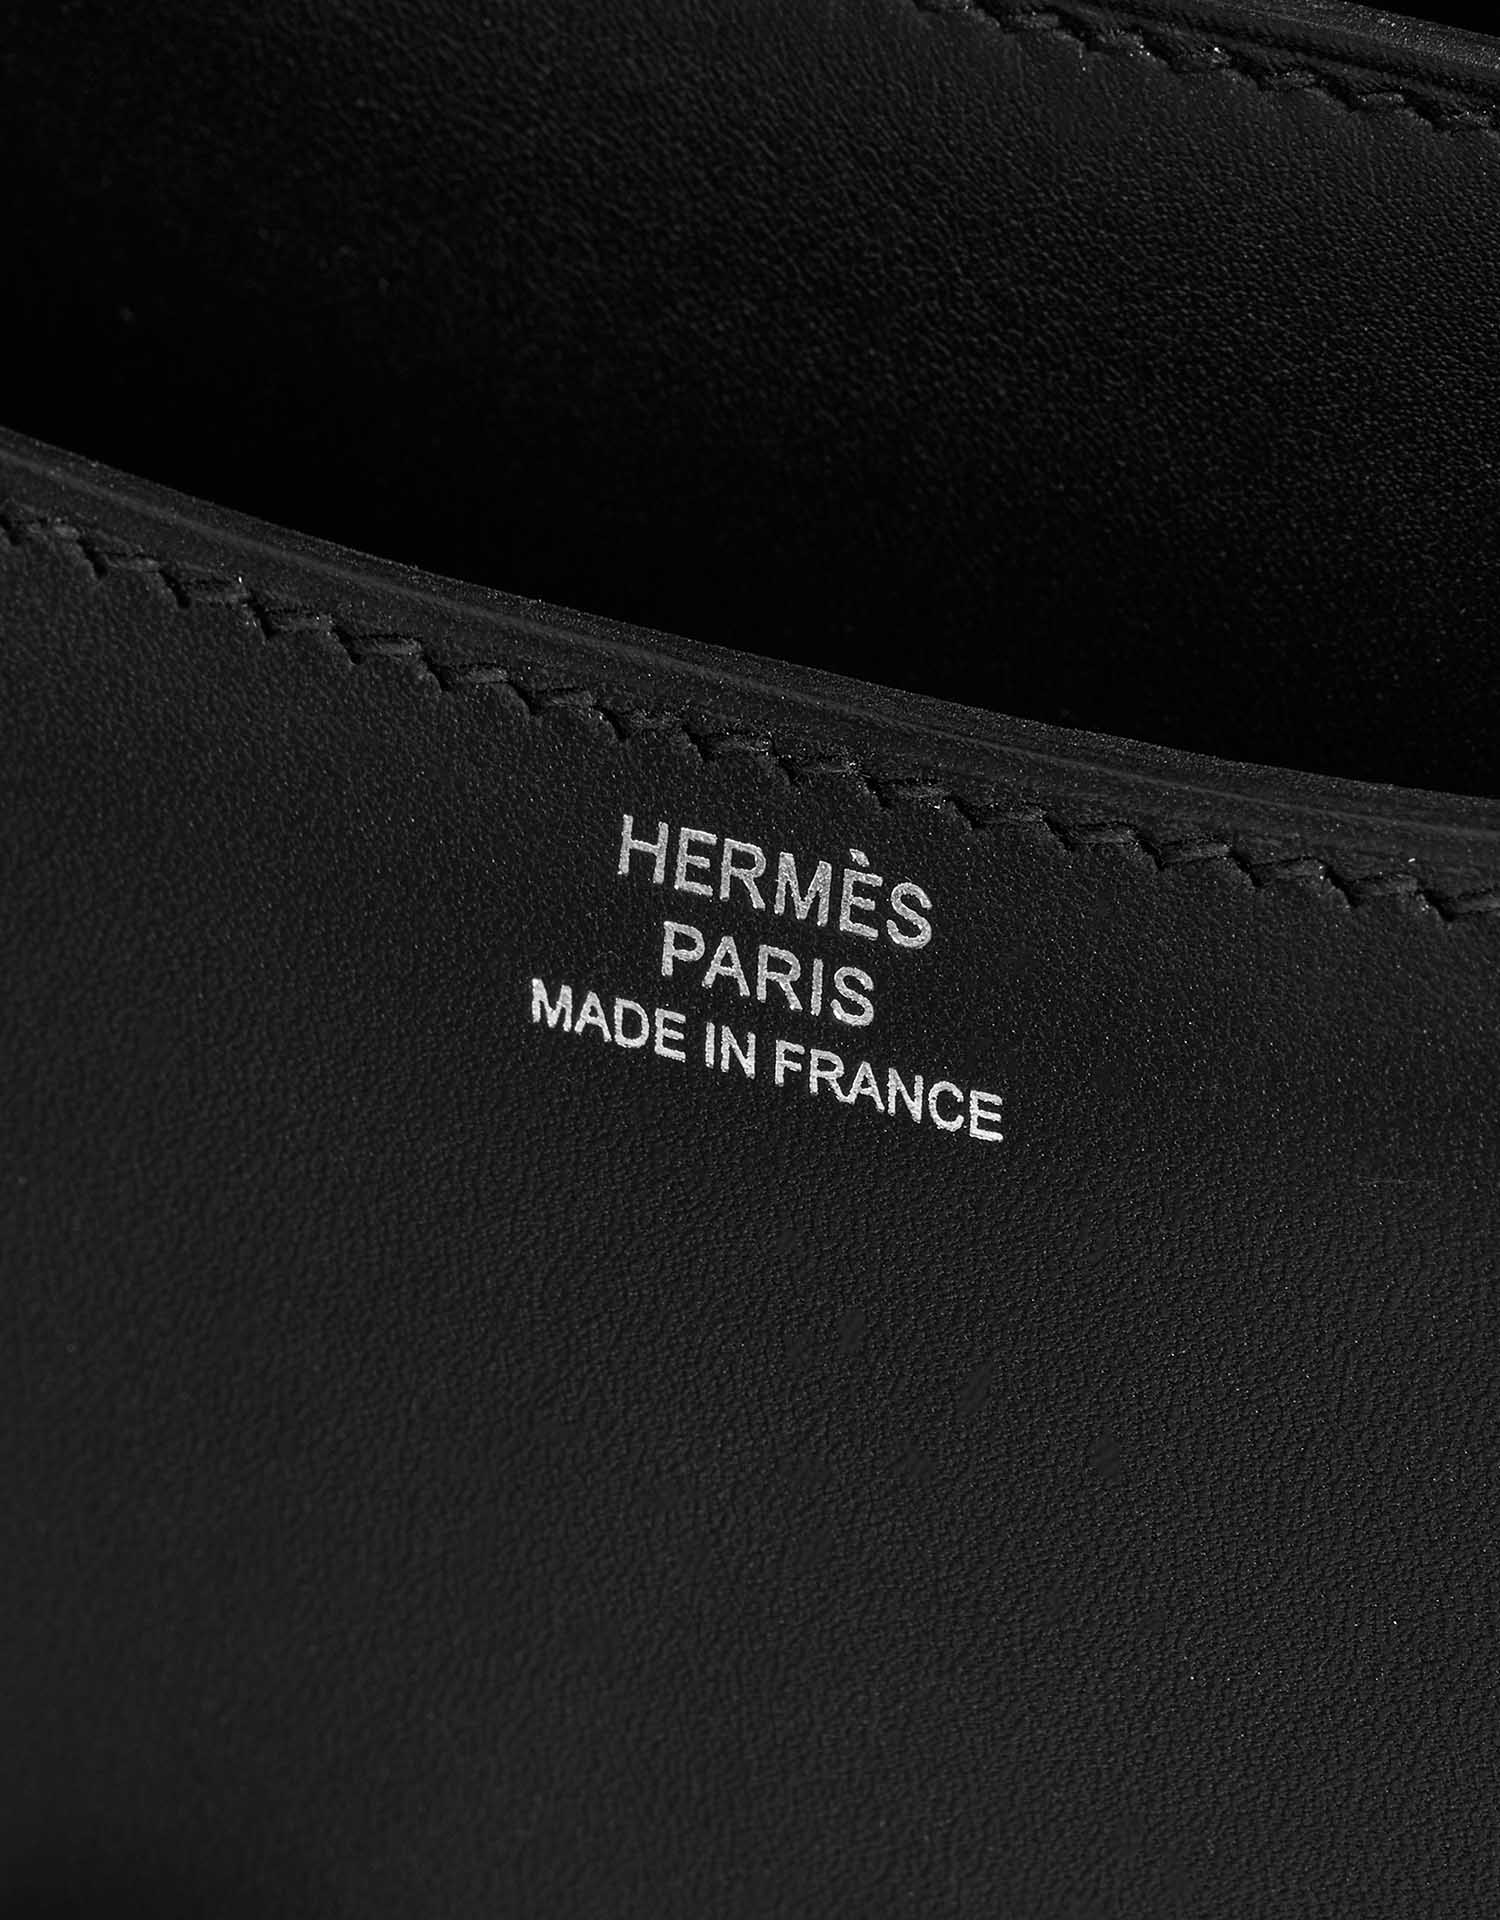 Hermès Constance 18 Schwarz Logo | Verkaufen Sie Ihre Designer-Tasche auf Saclab.com